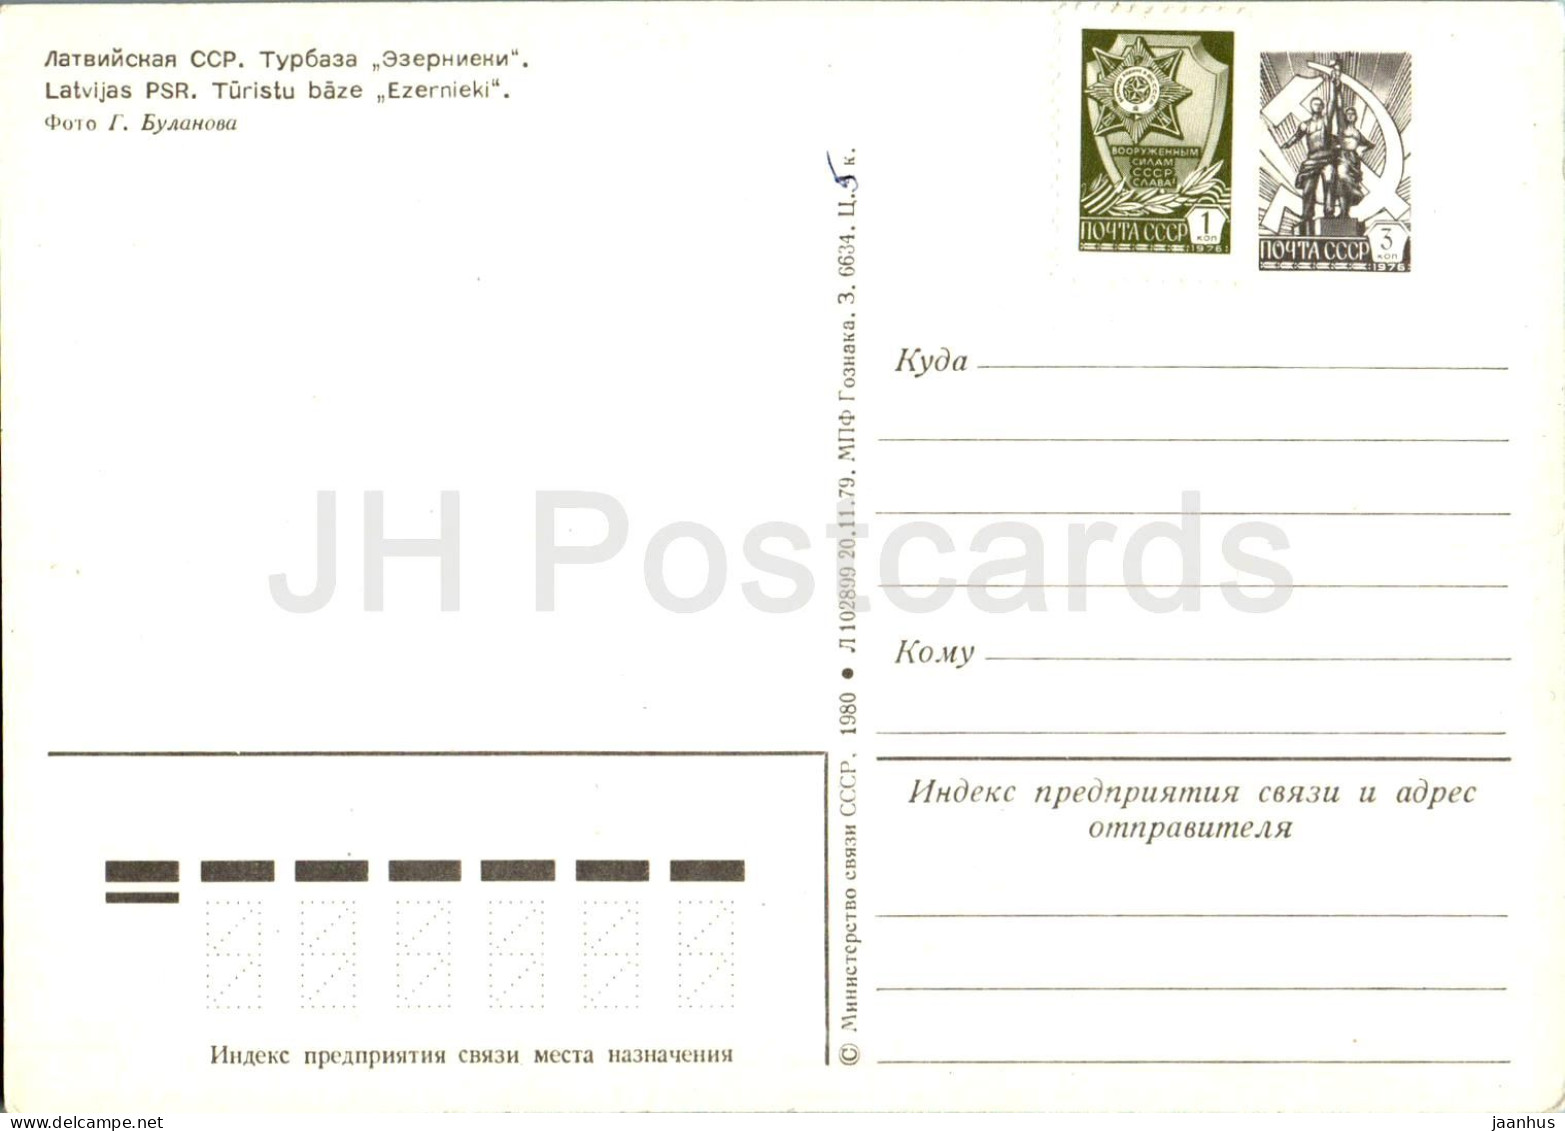 Tourist Base Ezernieki - Postal Stationery - 1980 - Latvia USSR - Unused - Latvia